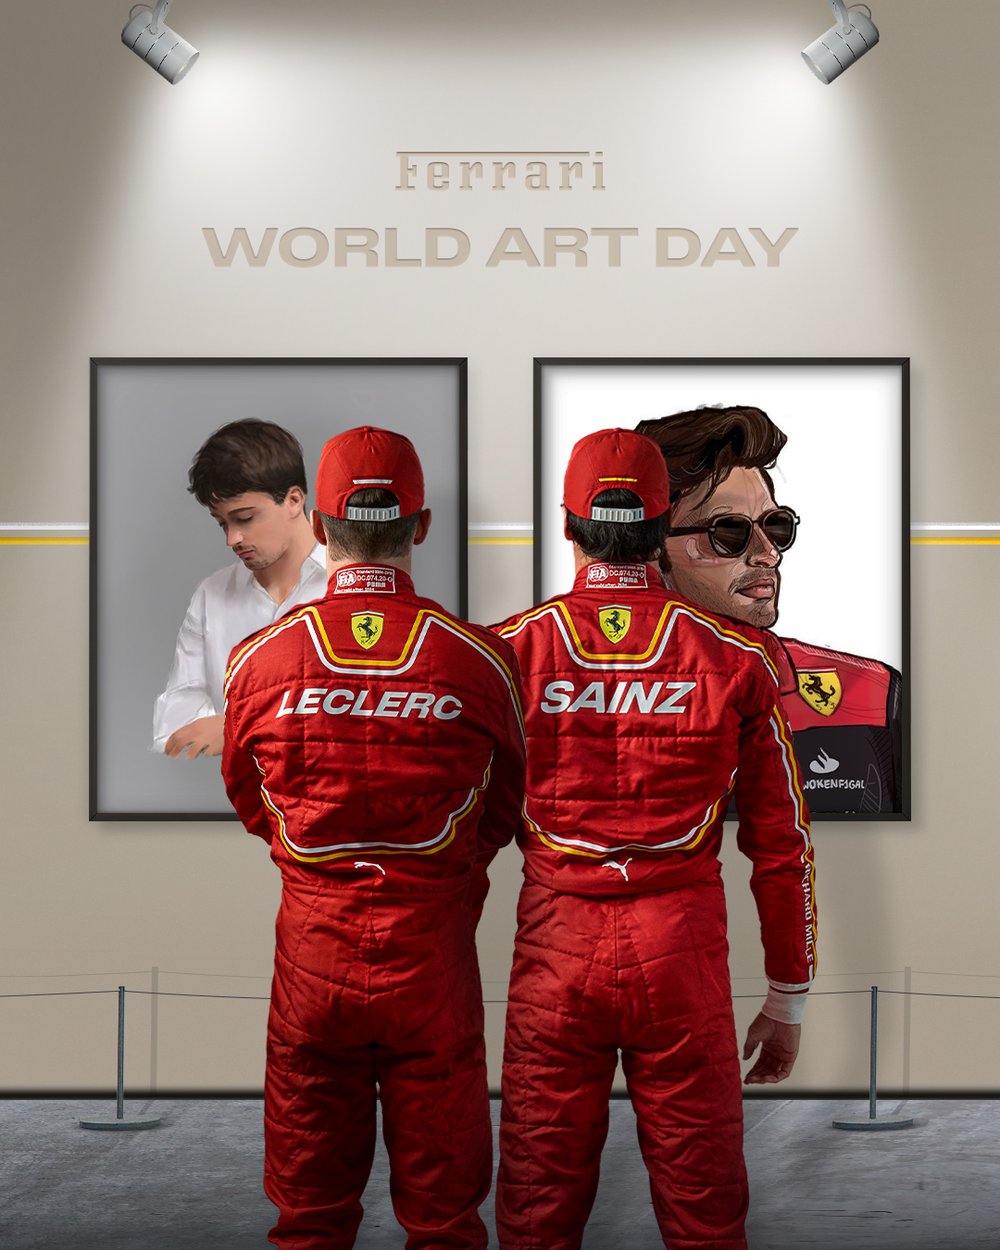 6 Ferrari World Art Day 1.jpg